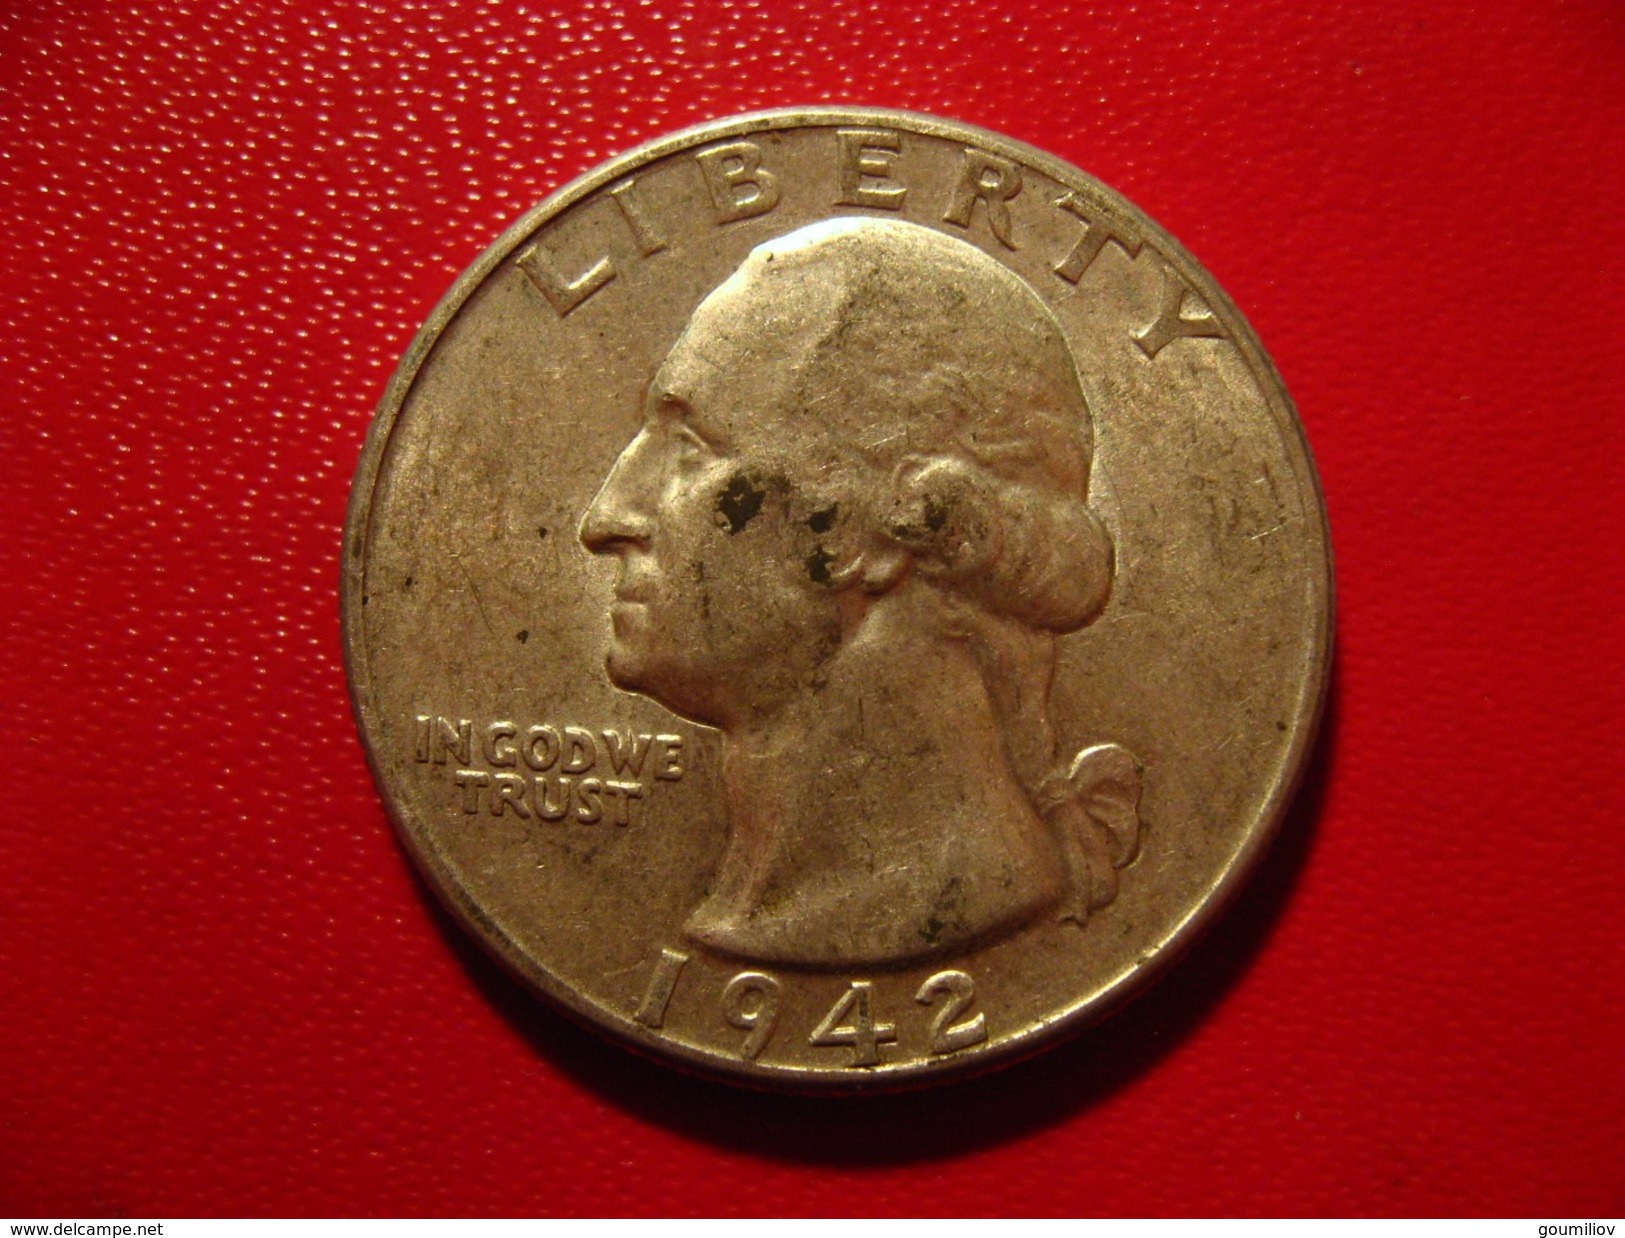 Etats-Unis - USA - Quarter Dollar 1942 Wasington 3091 - 1932-1998: Washington